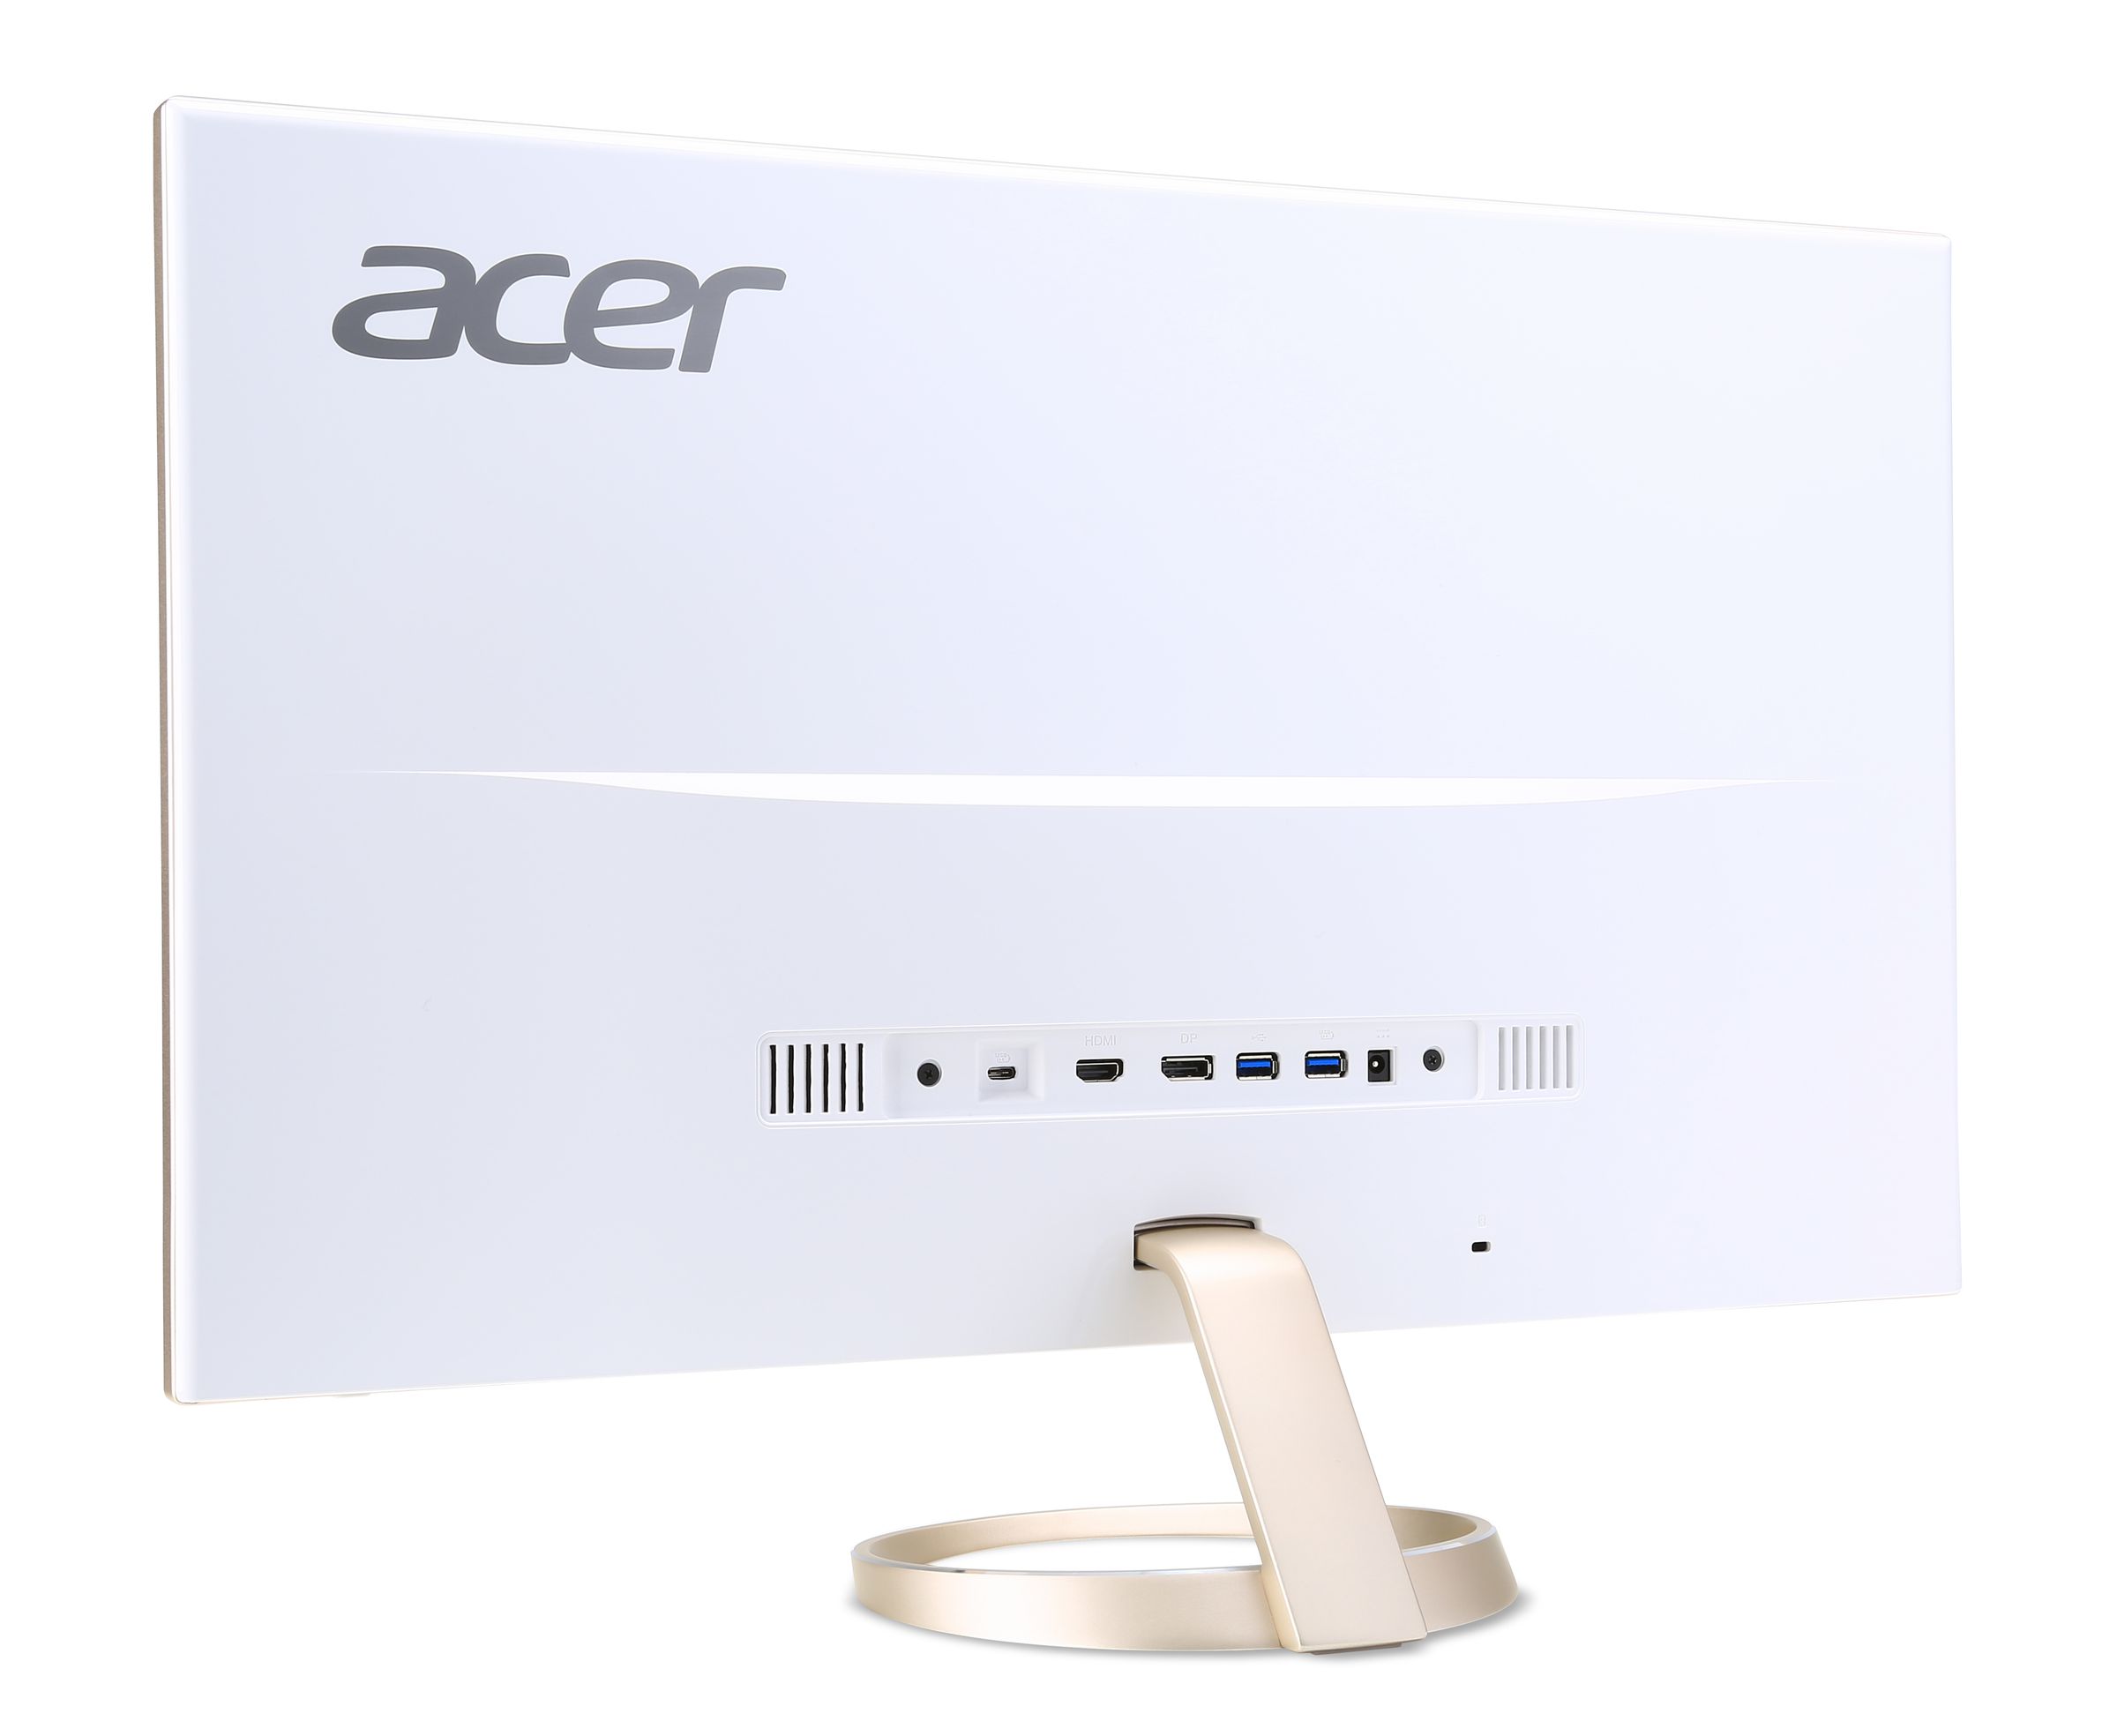 Acer's CES 2016 monitors press photos